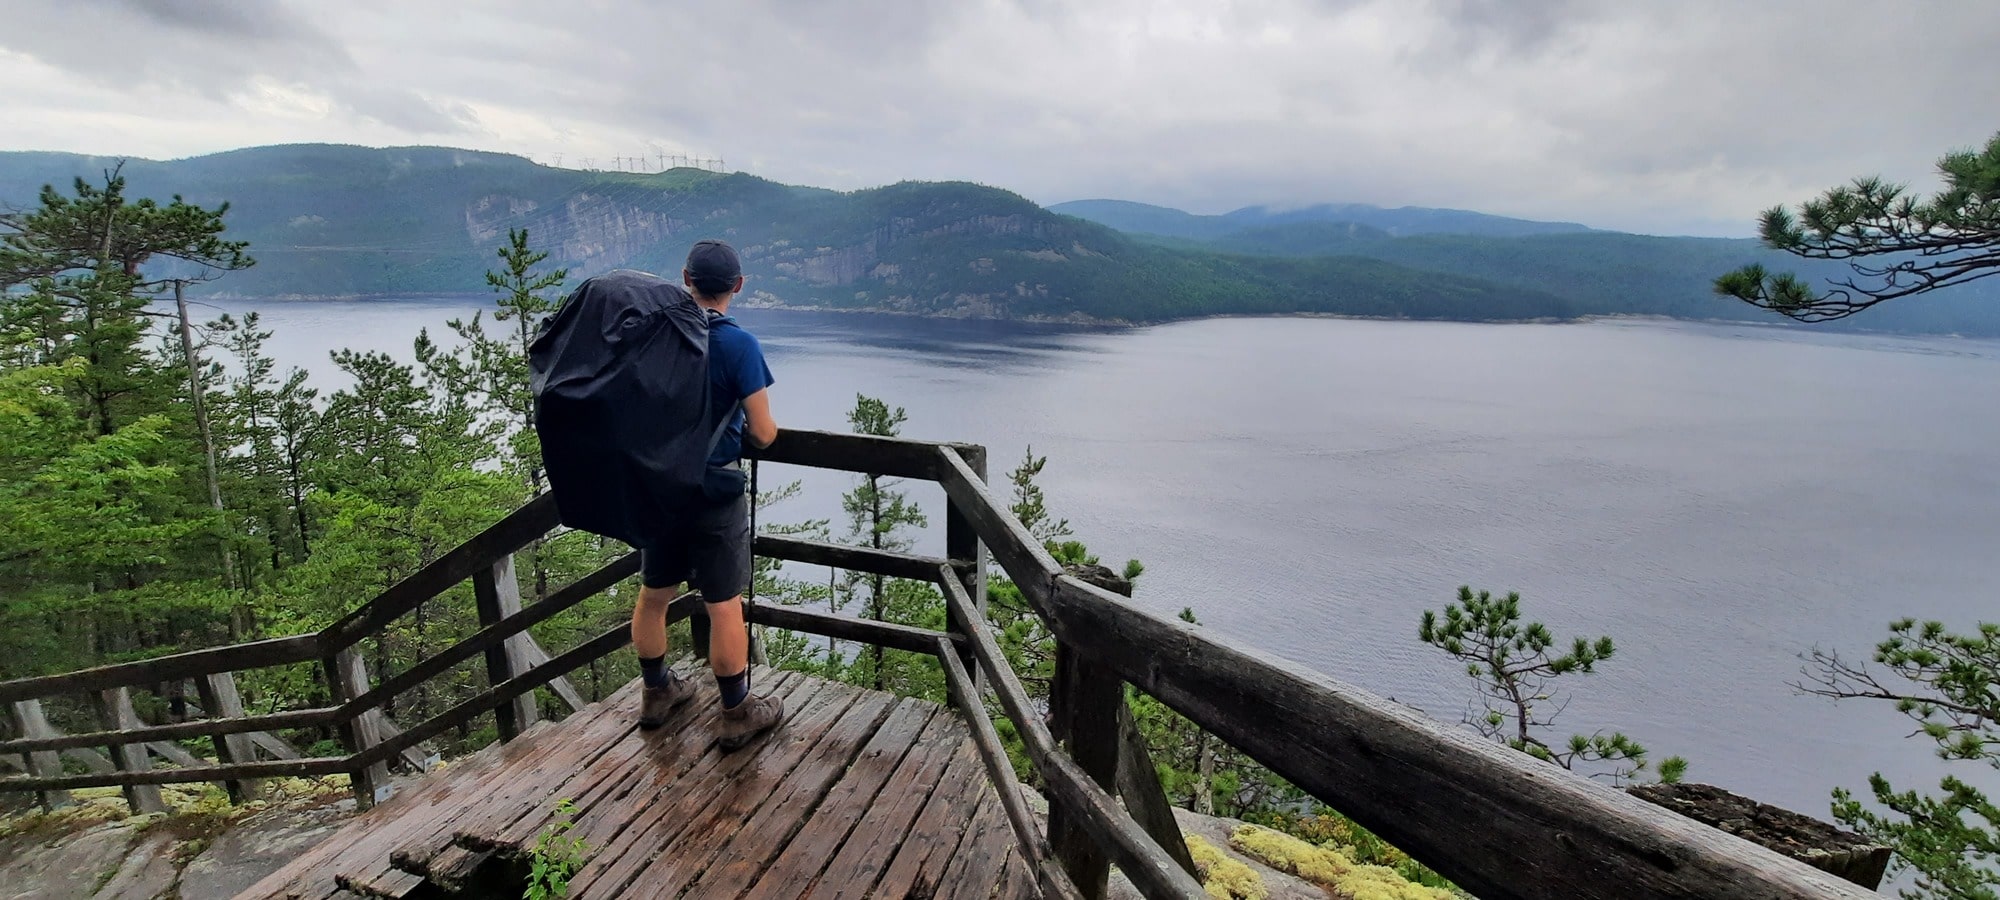 Randonnée sous la pluie sur le sentier Le Fjord dans notre article Sentier le Fjord : 50 km de randonnée en autonomie dans le Parc national du Fjord du Saguenay #sentierLeFjord #fjord #saguenay #randonnee